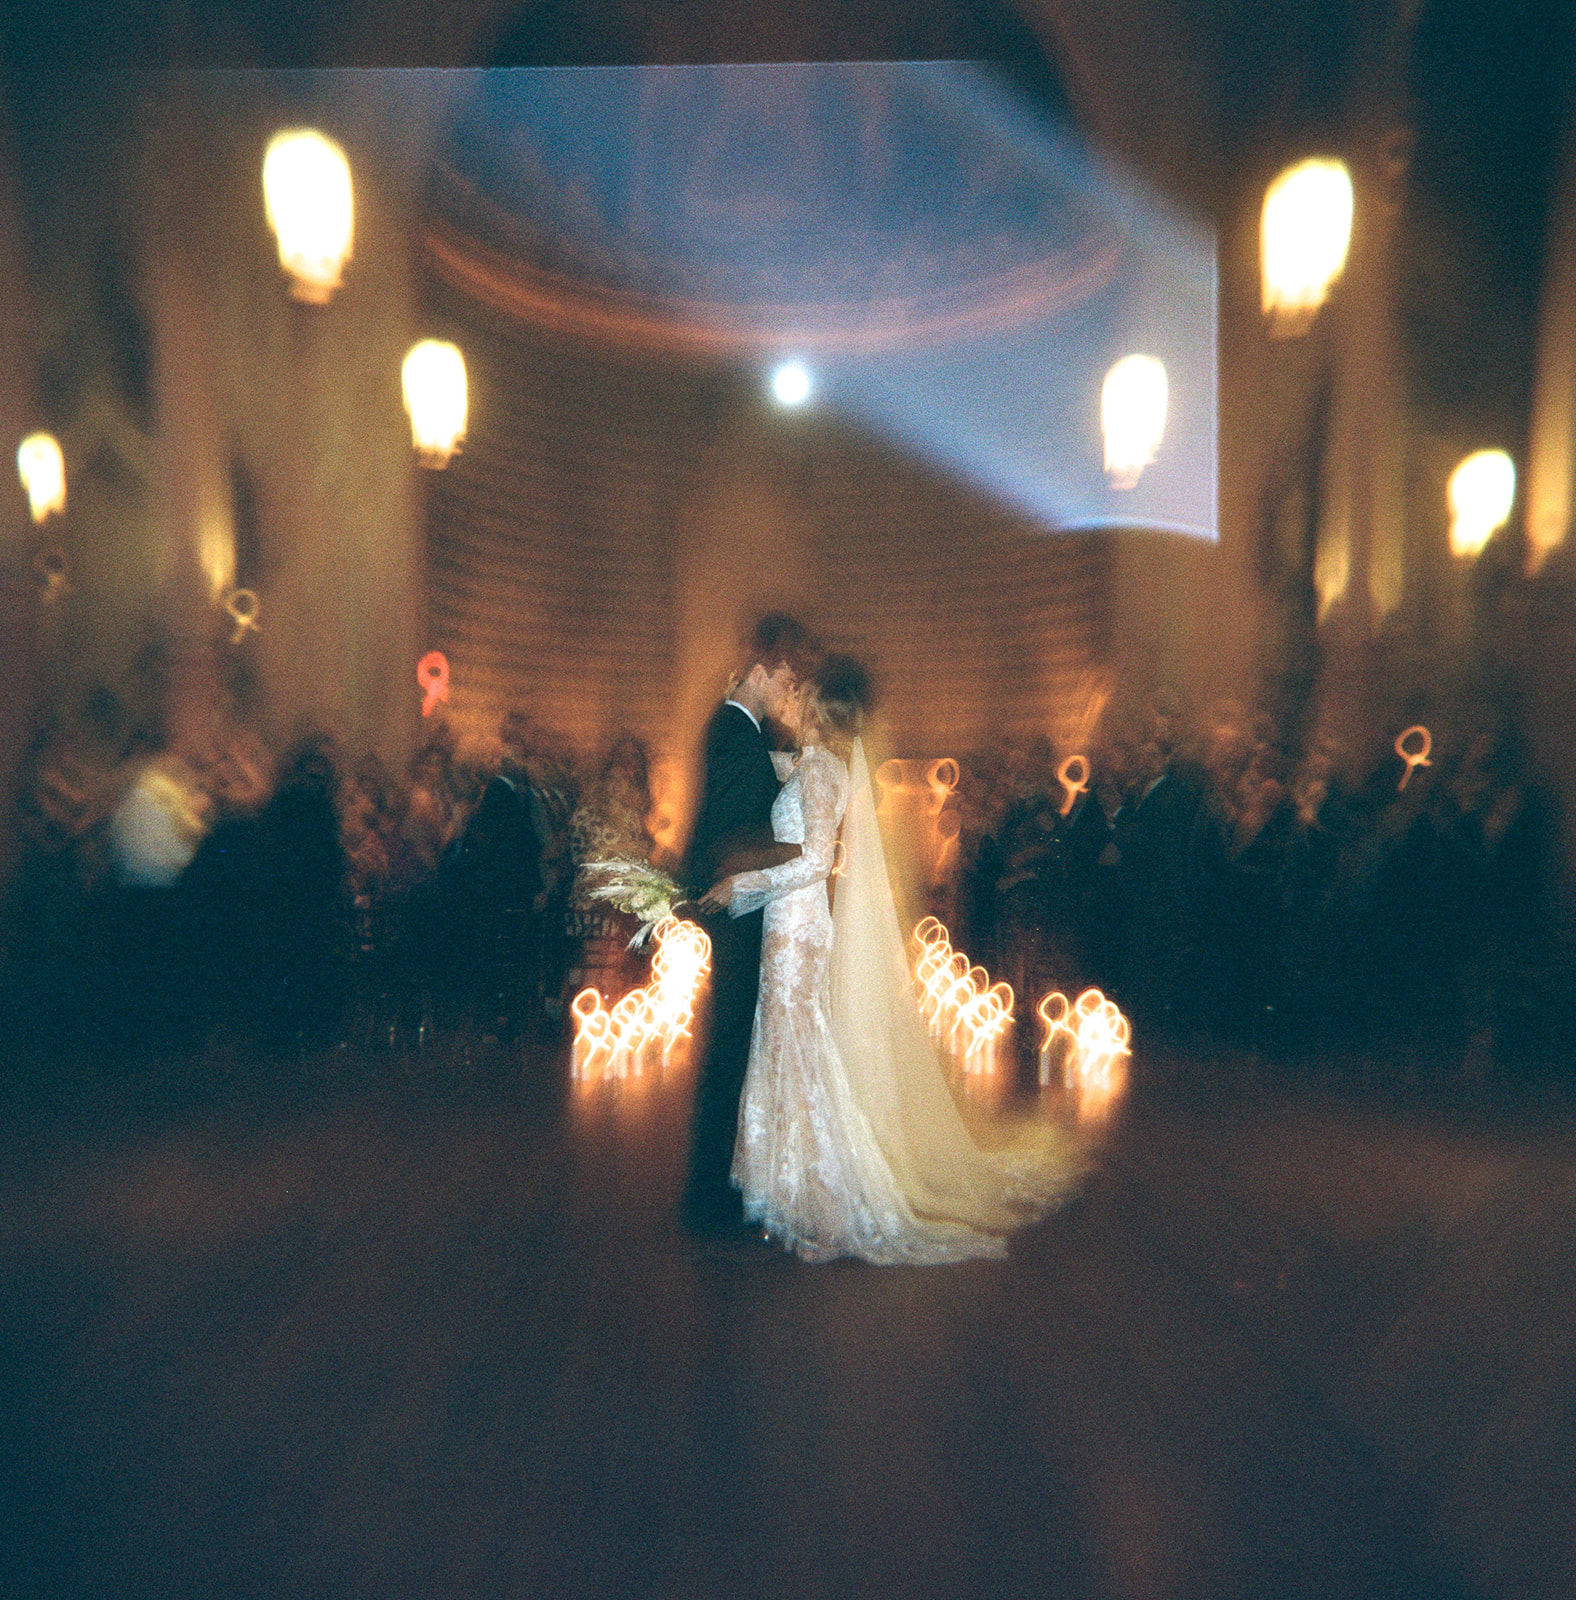 Captivating film photographs documenting the wedding celebration